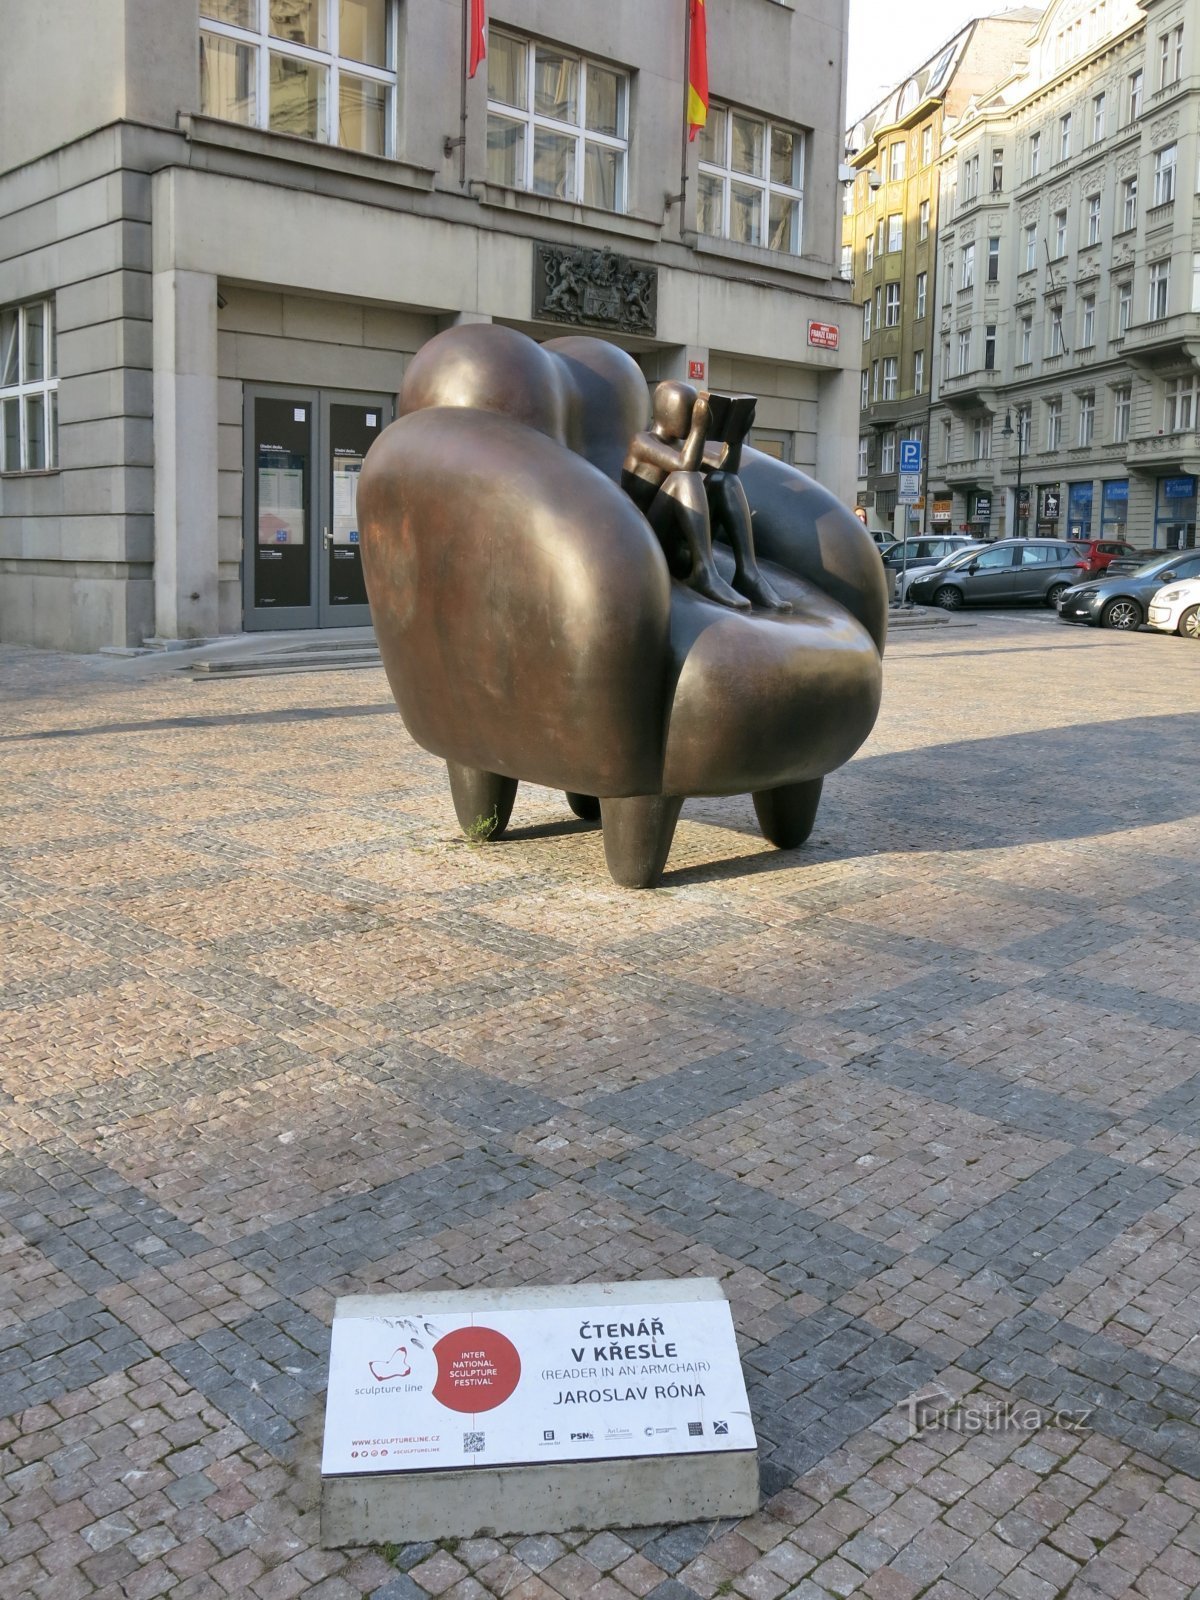 Prague (Phố cổ) - Rónův Čtenář trên ghế trên quảng trường Franz Kafka